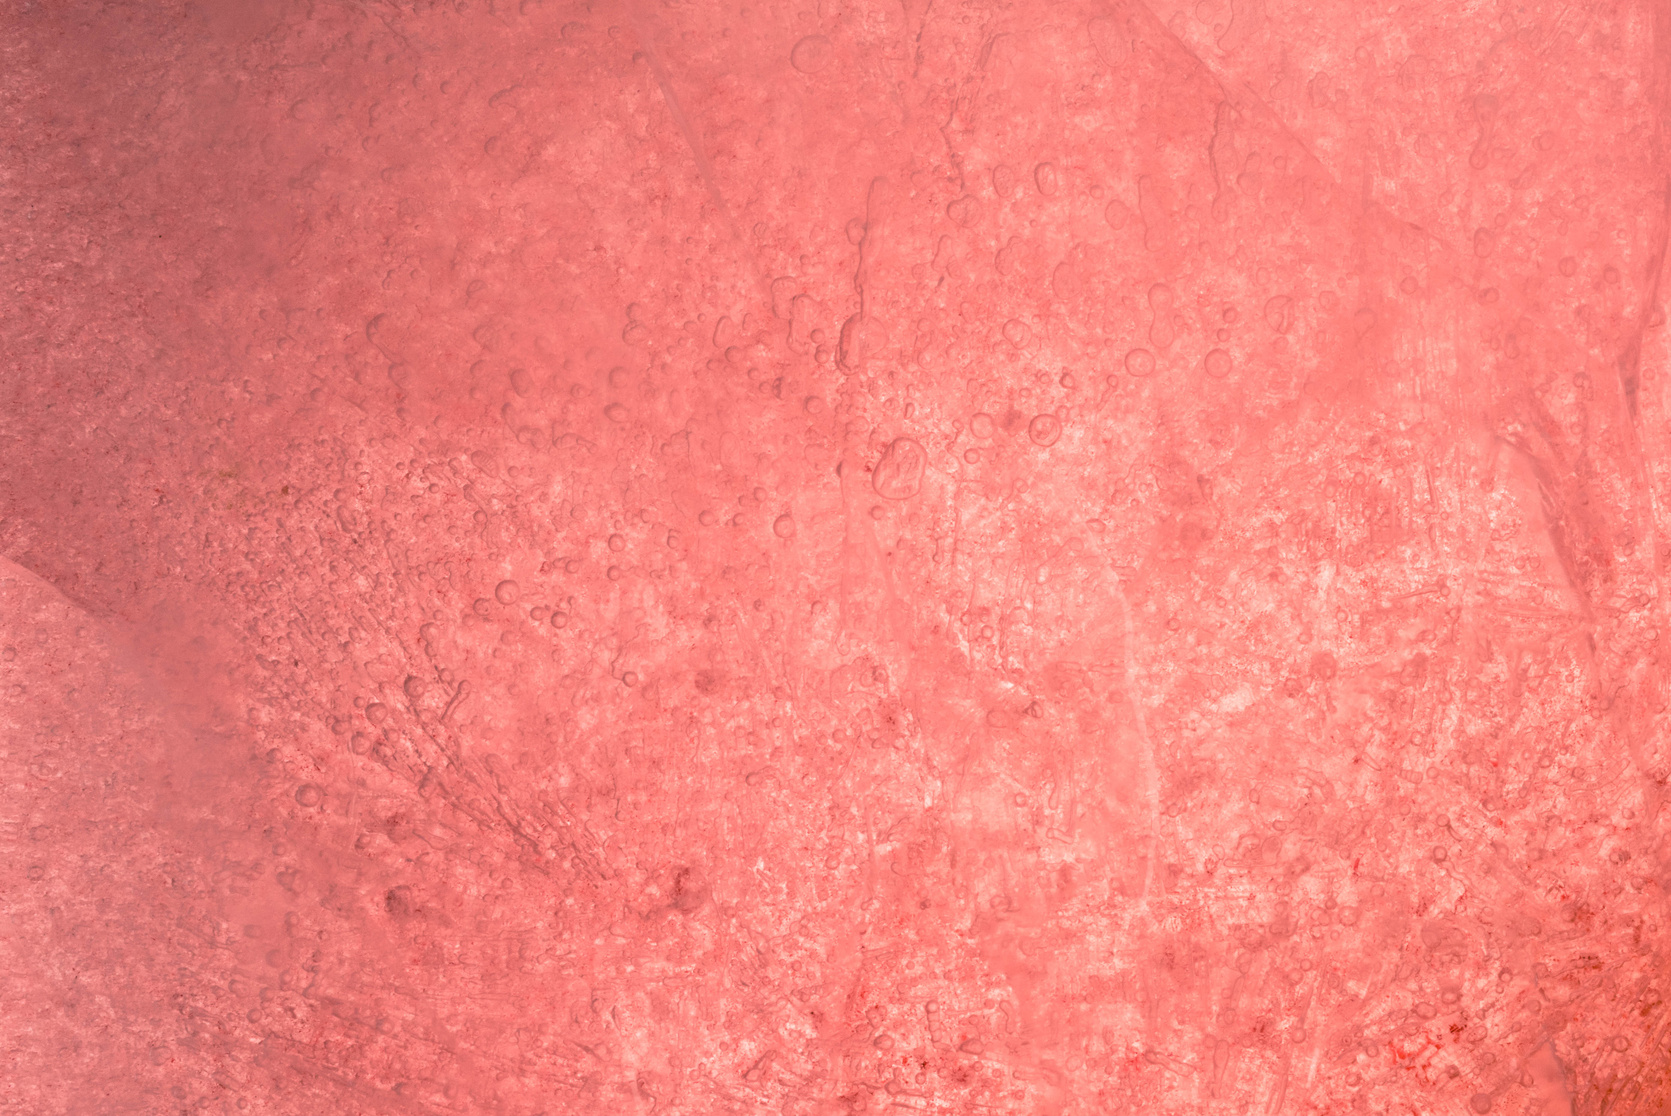 Pinkish ice texture